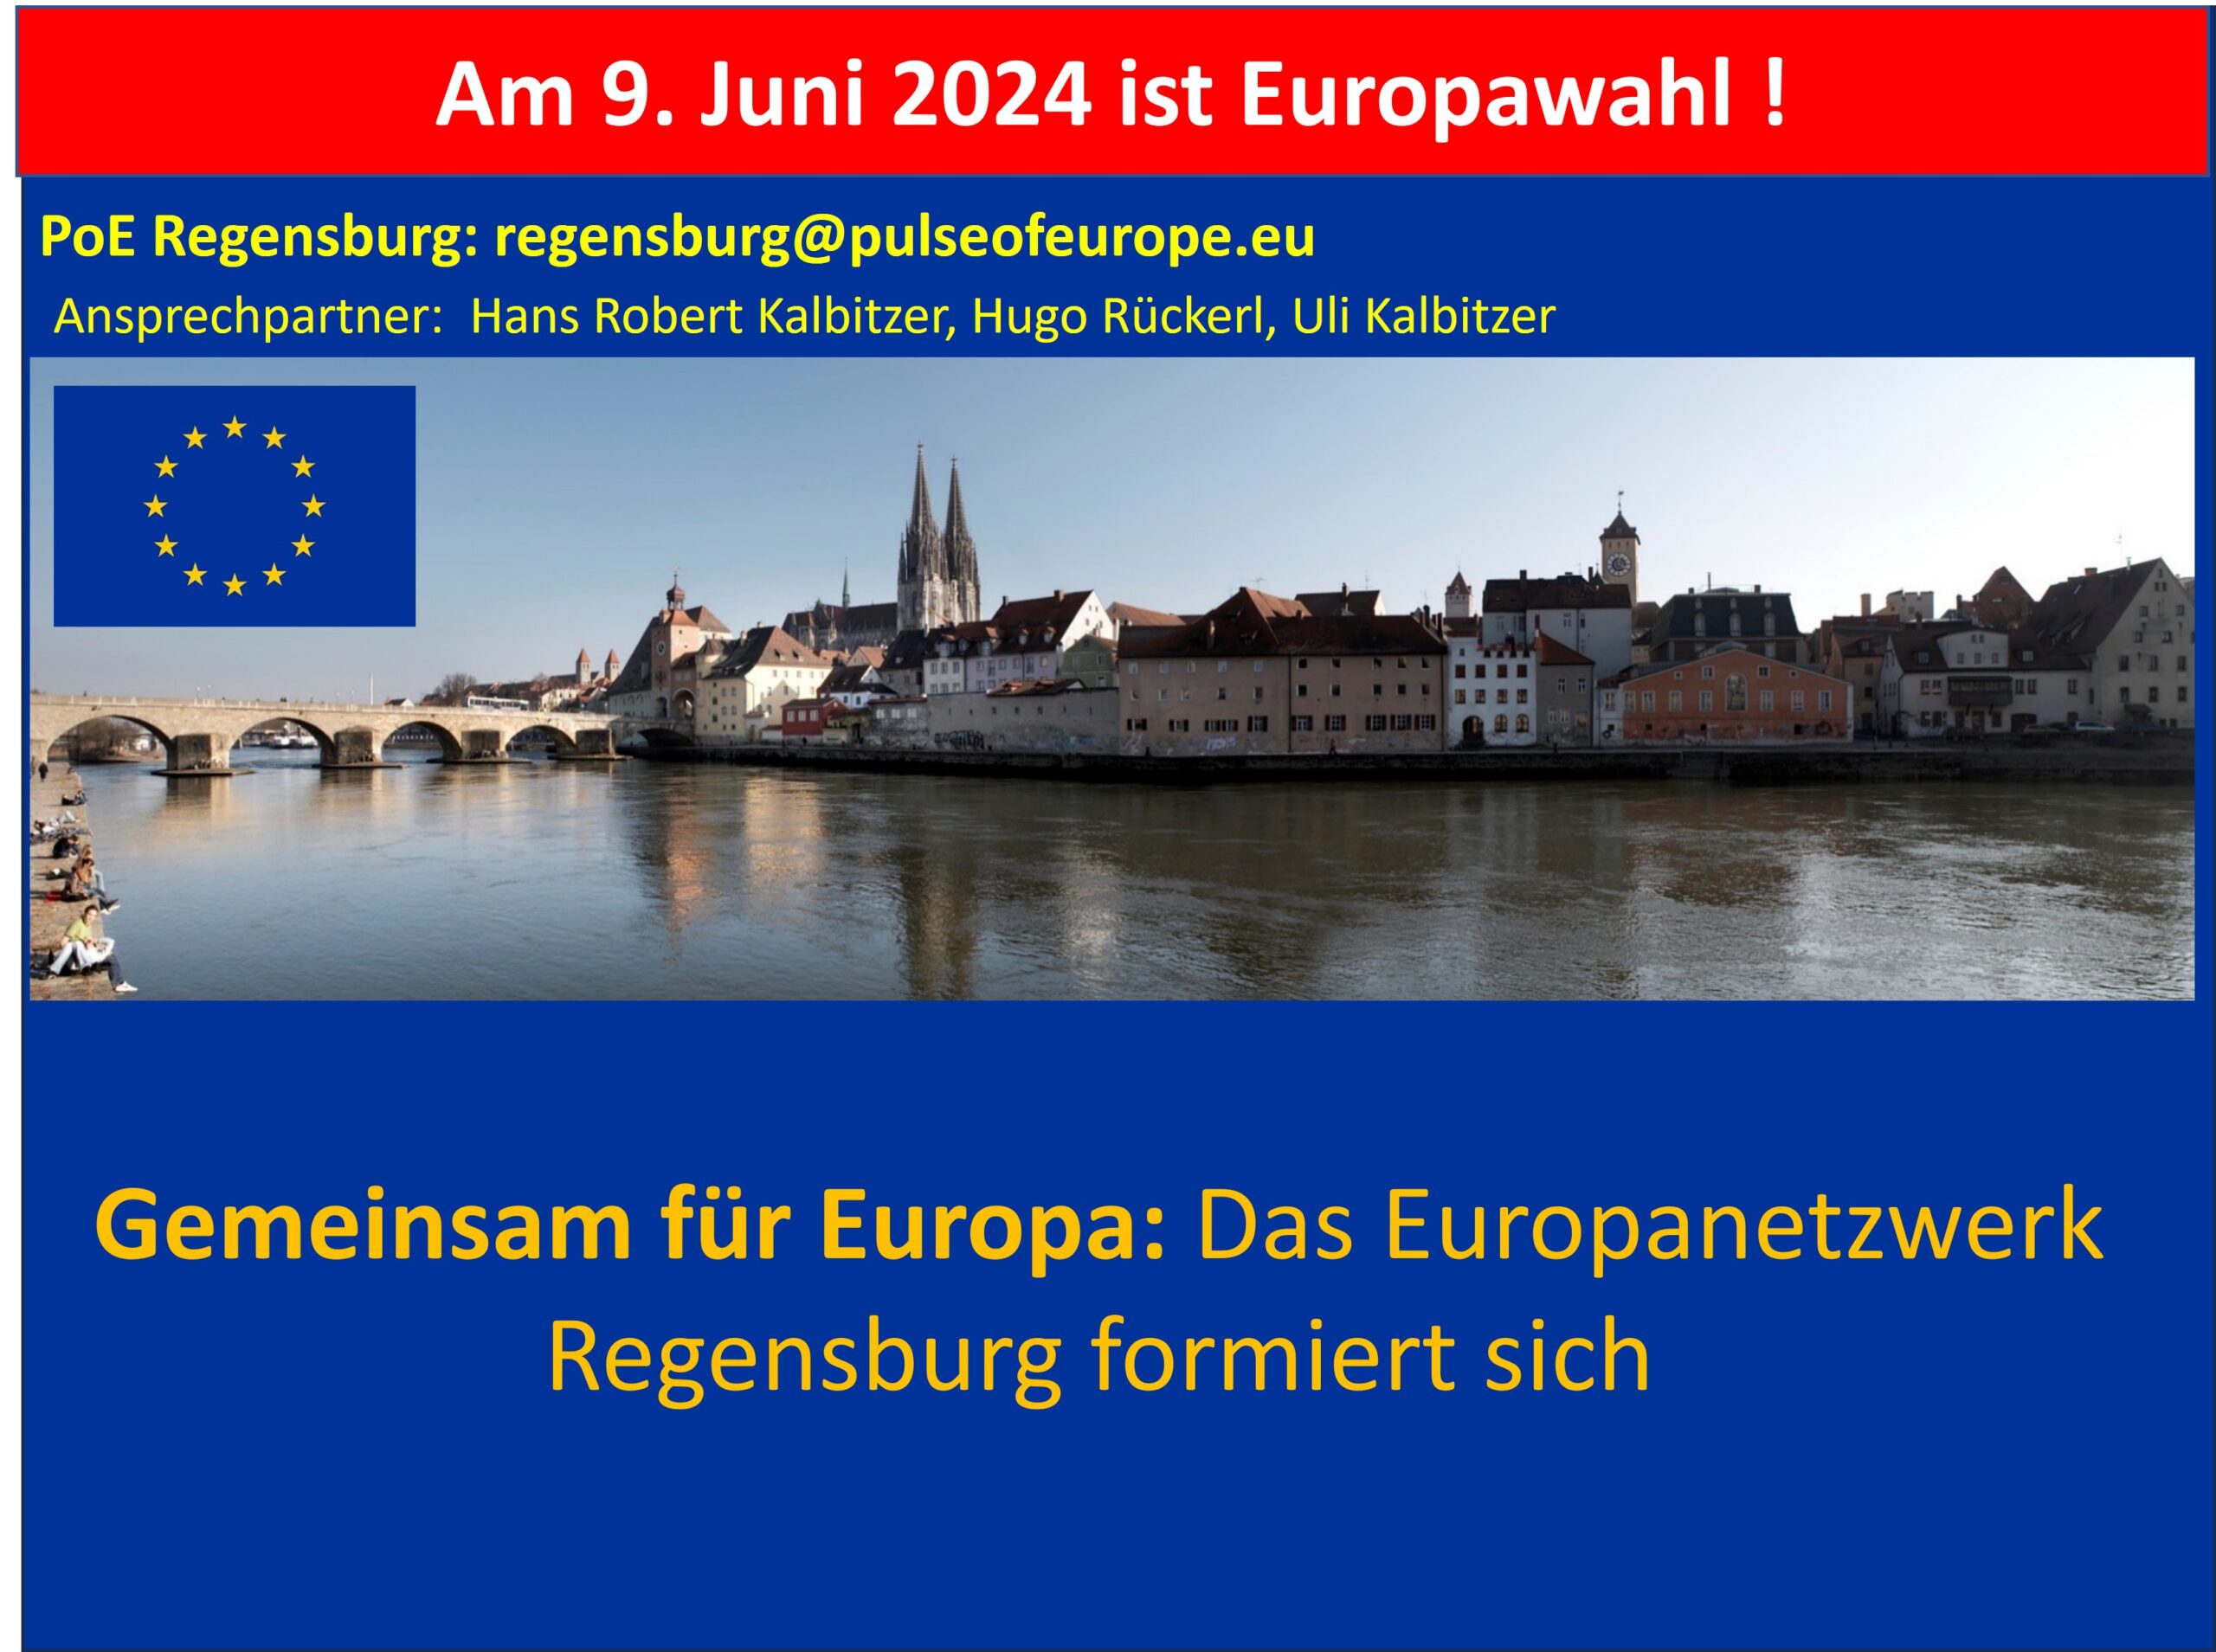 Europanetzwerk Regensburg